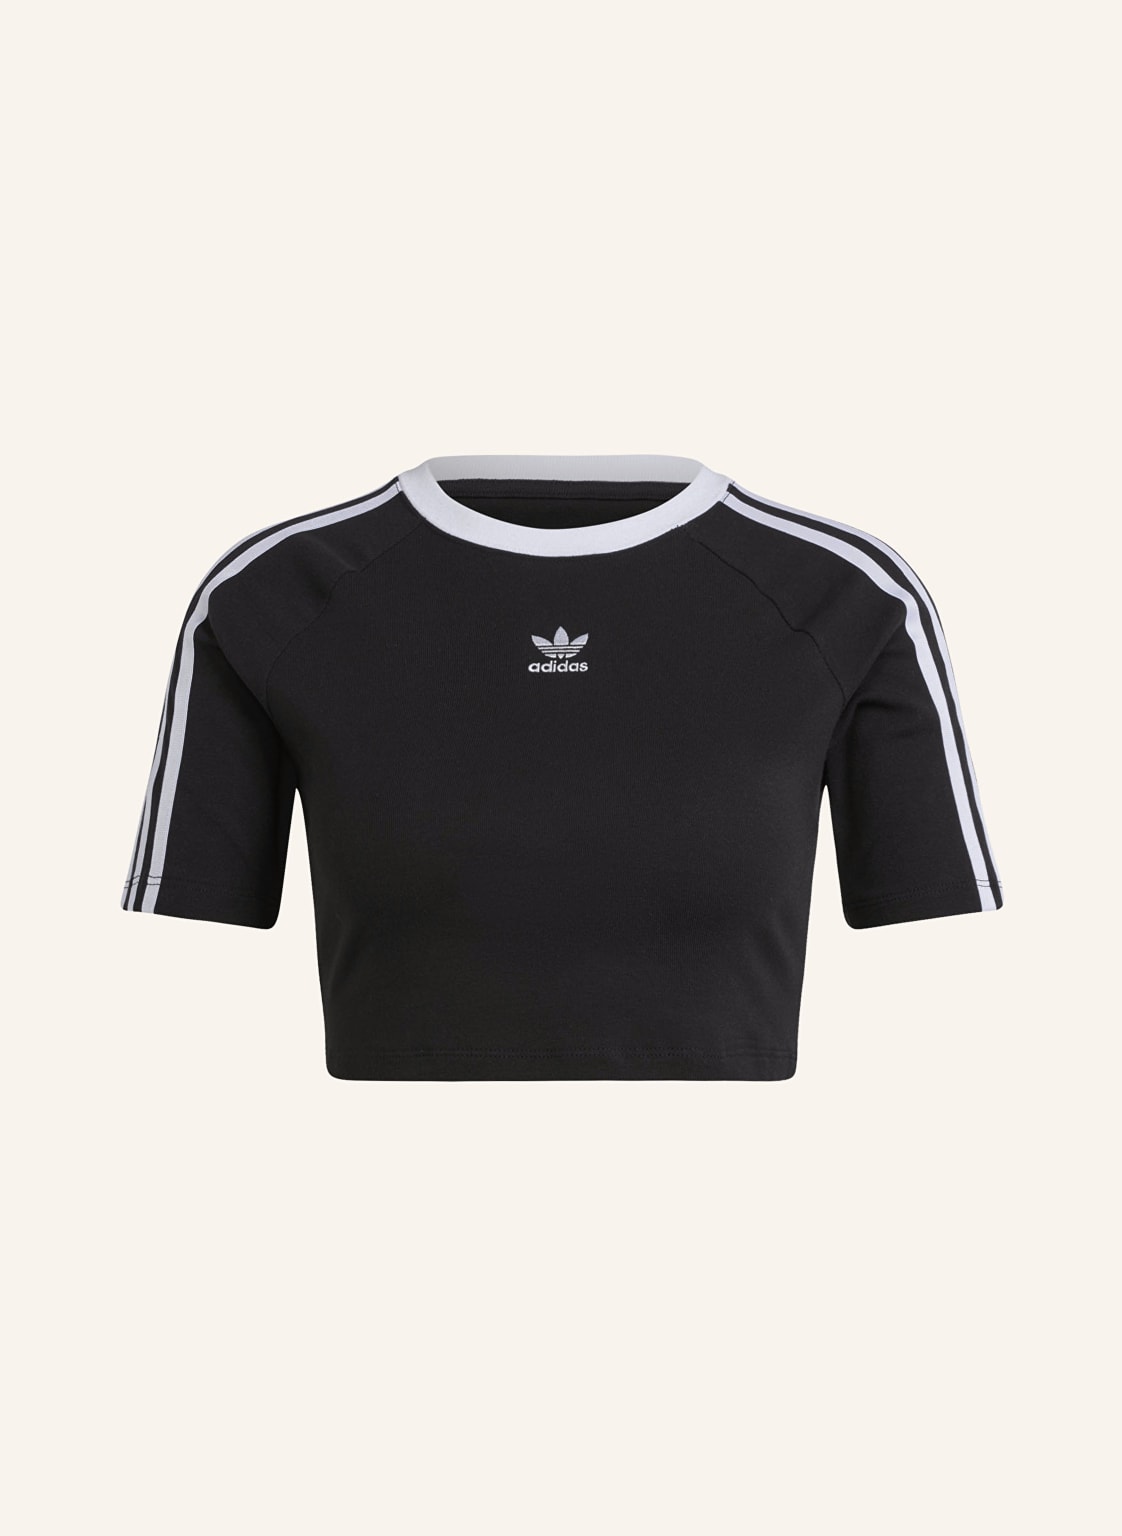 Adidas Originals Cropped-Shirt schwarz von adidas Originals